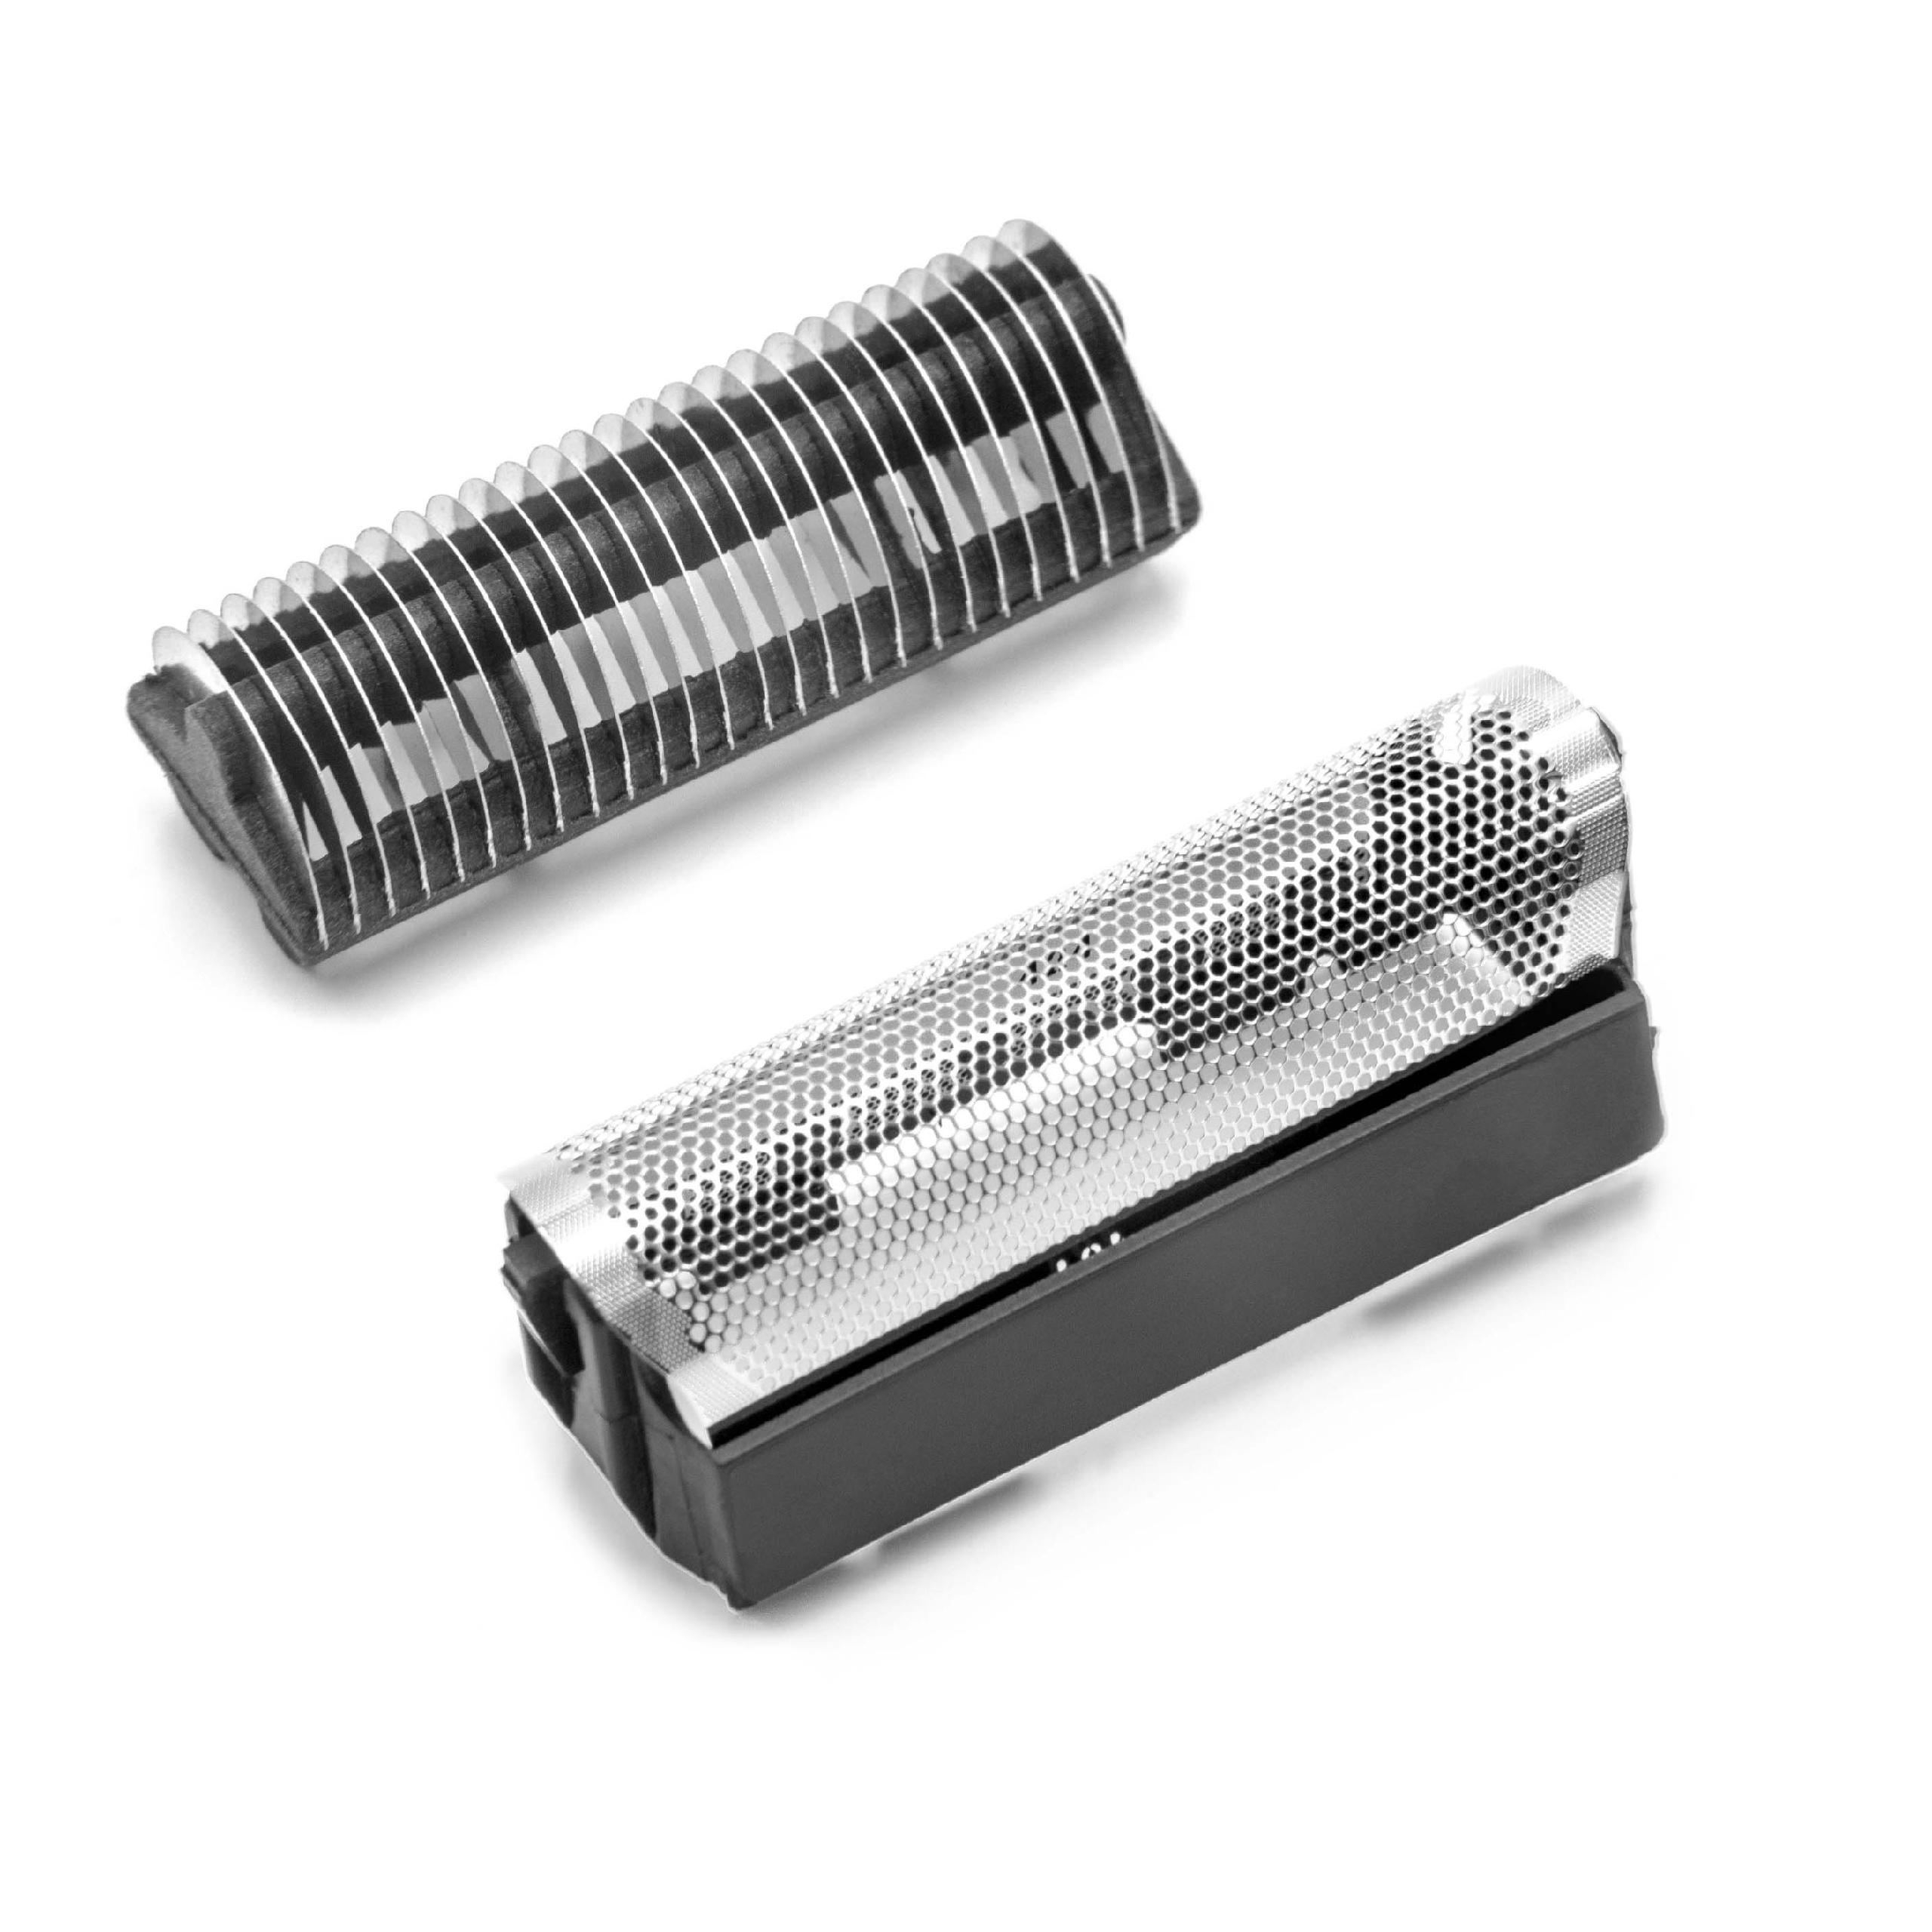 Combi Pack Shaver Part suitable for 3550 Razor - Foil + Blades, Black/Silver